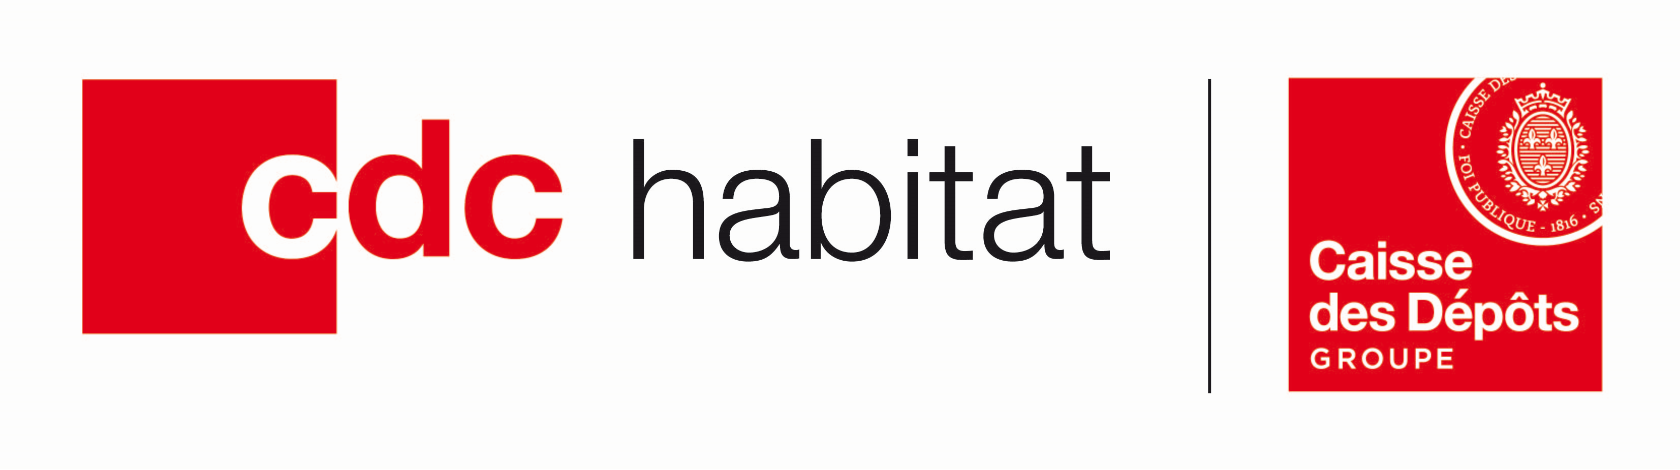 logo cdc habitat